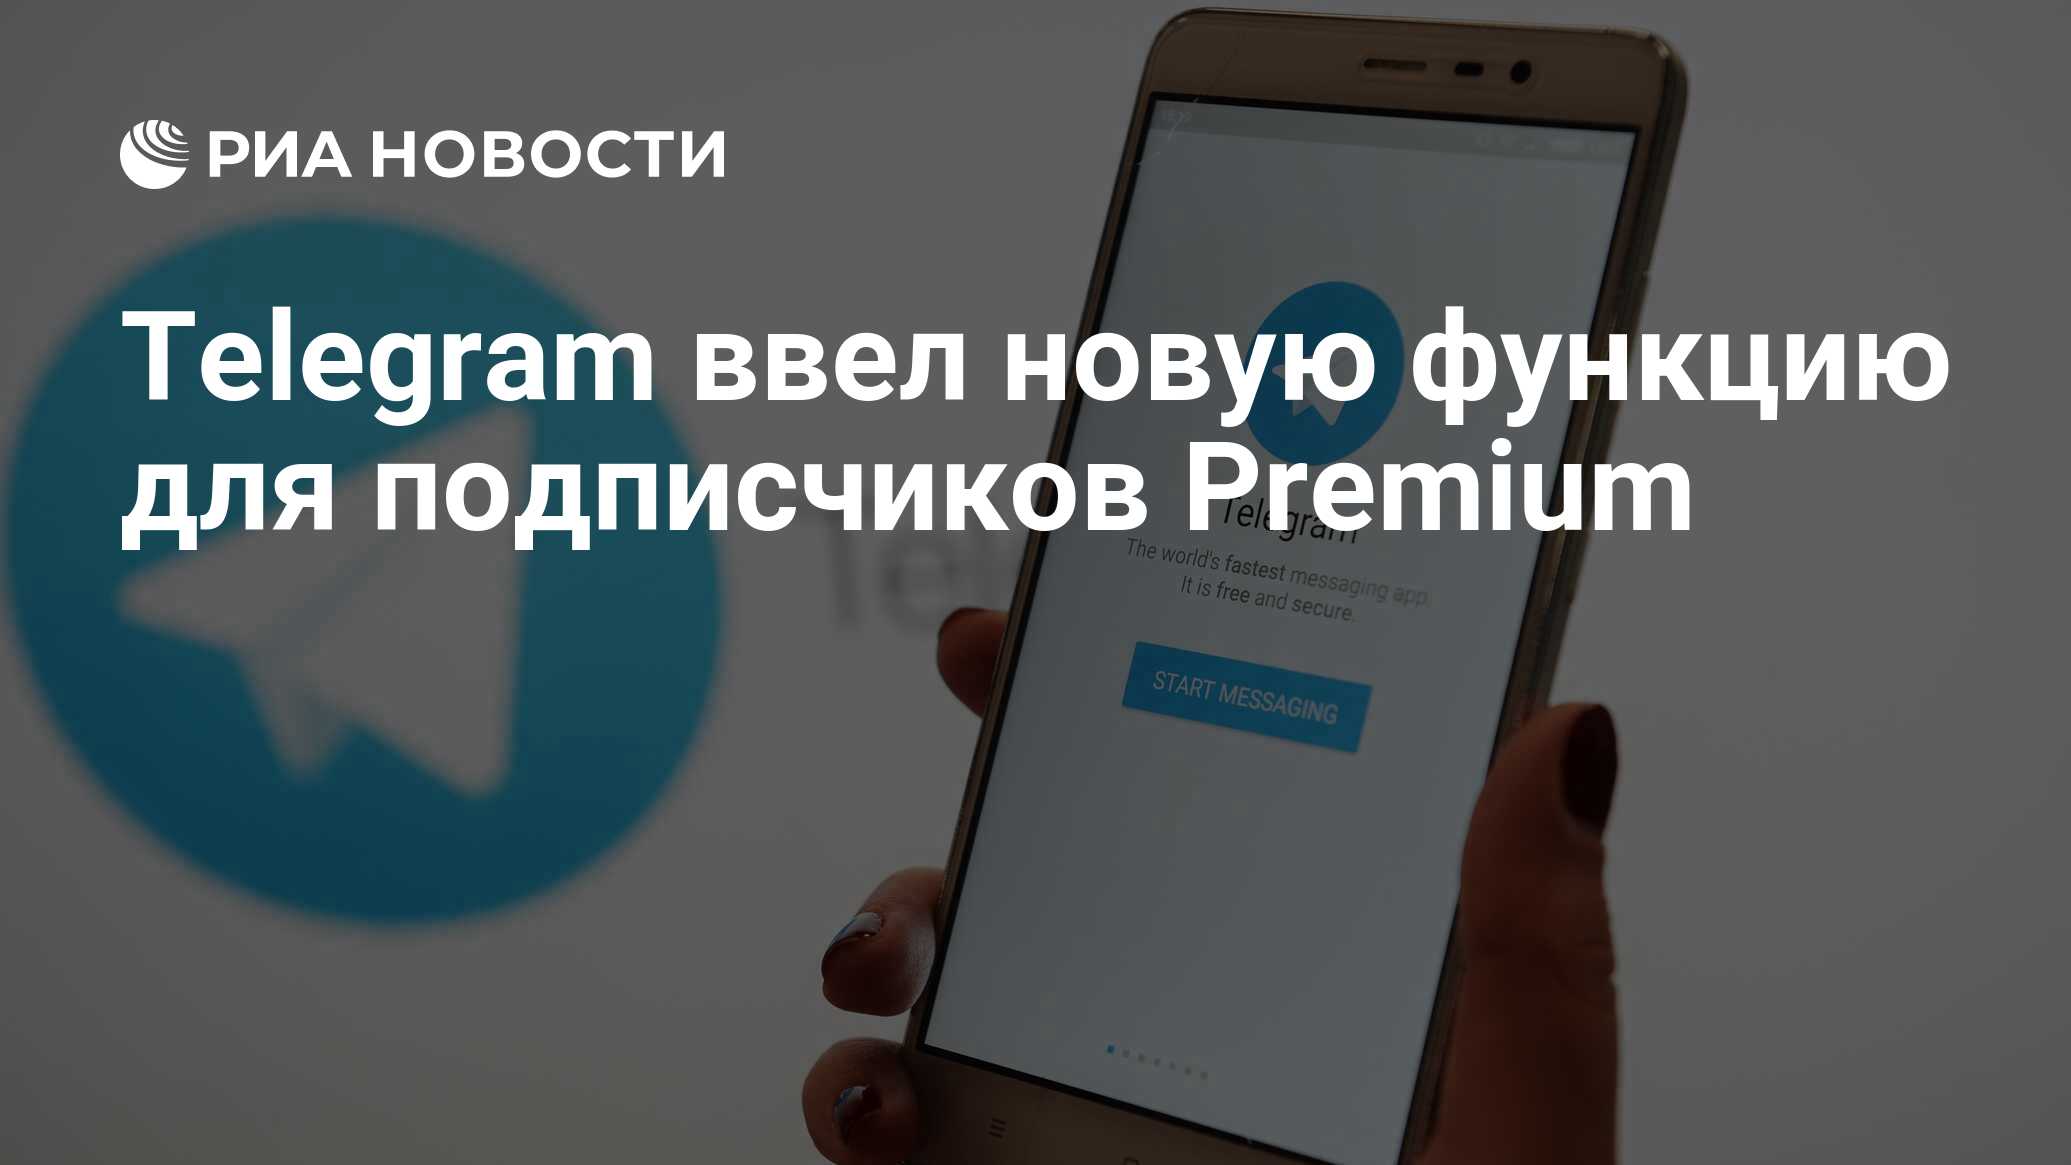 Telegram представил новую функцию для премиум-подписчиков